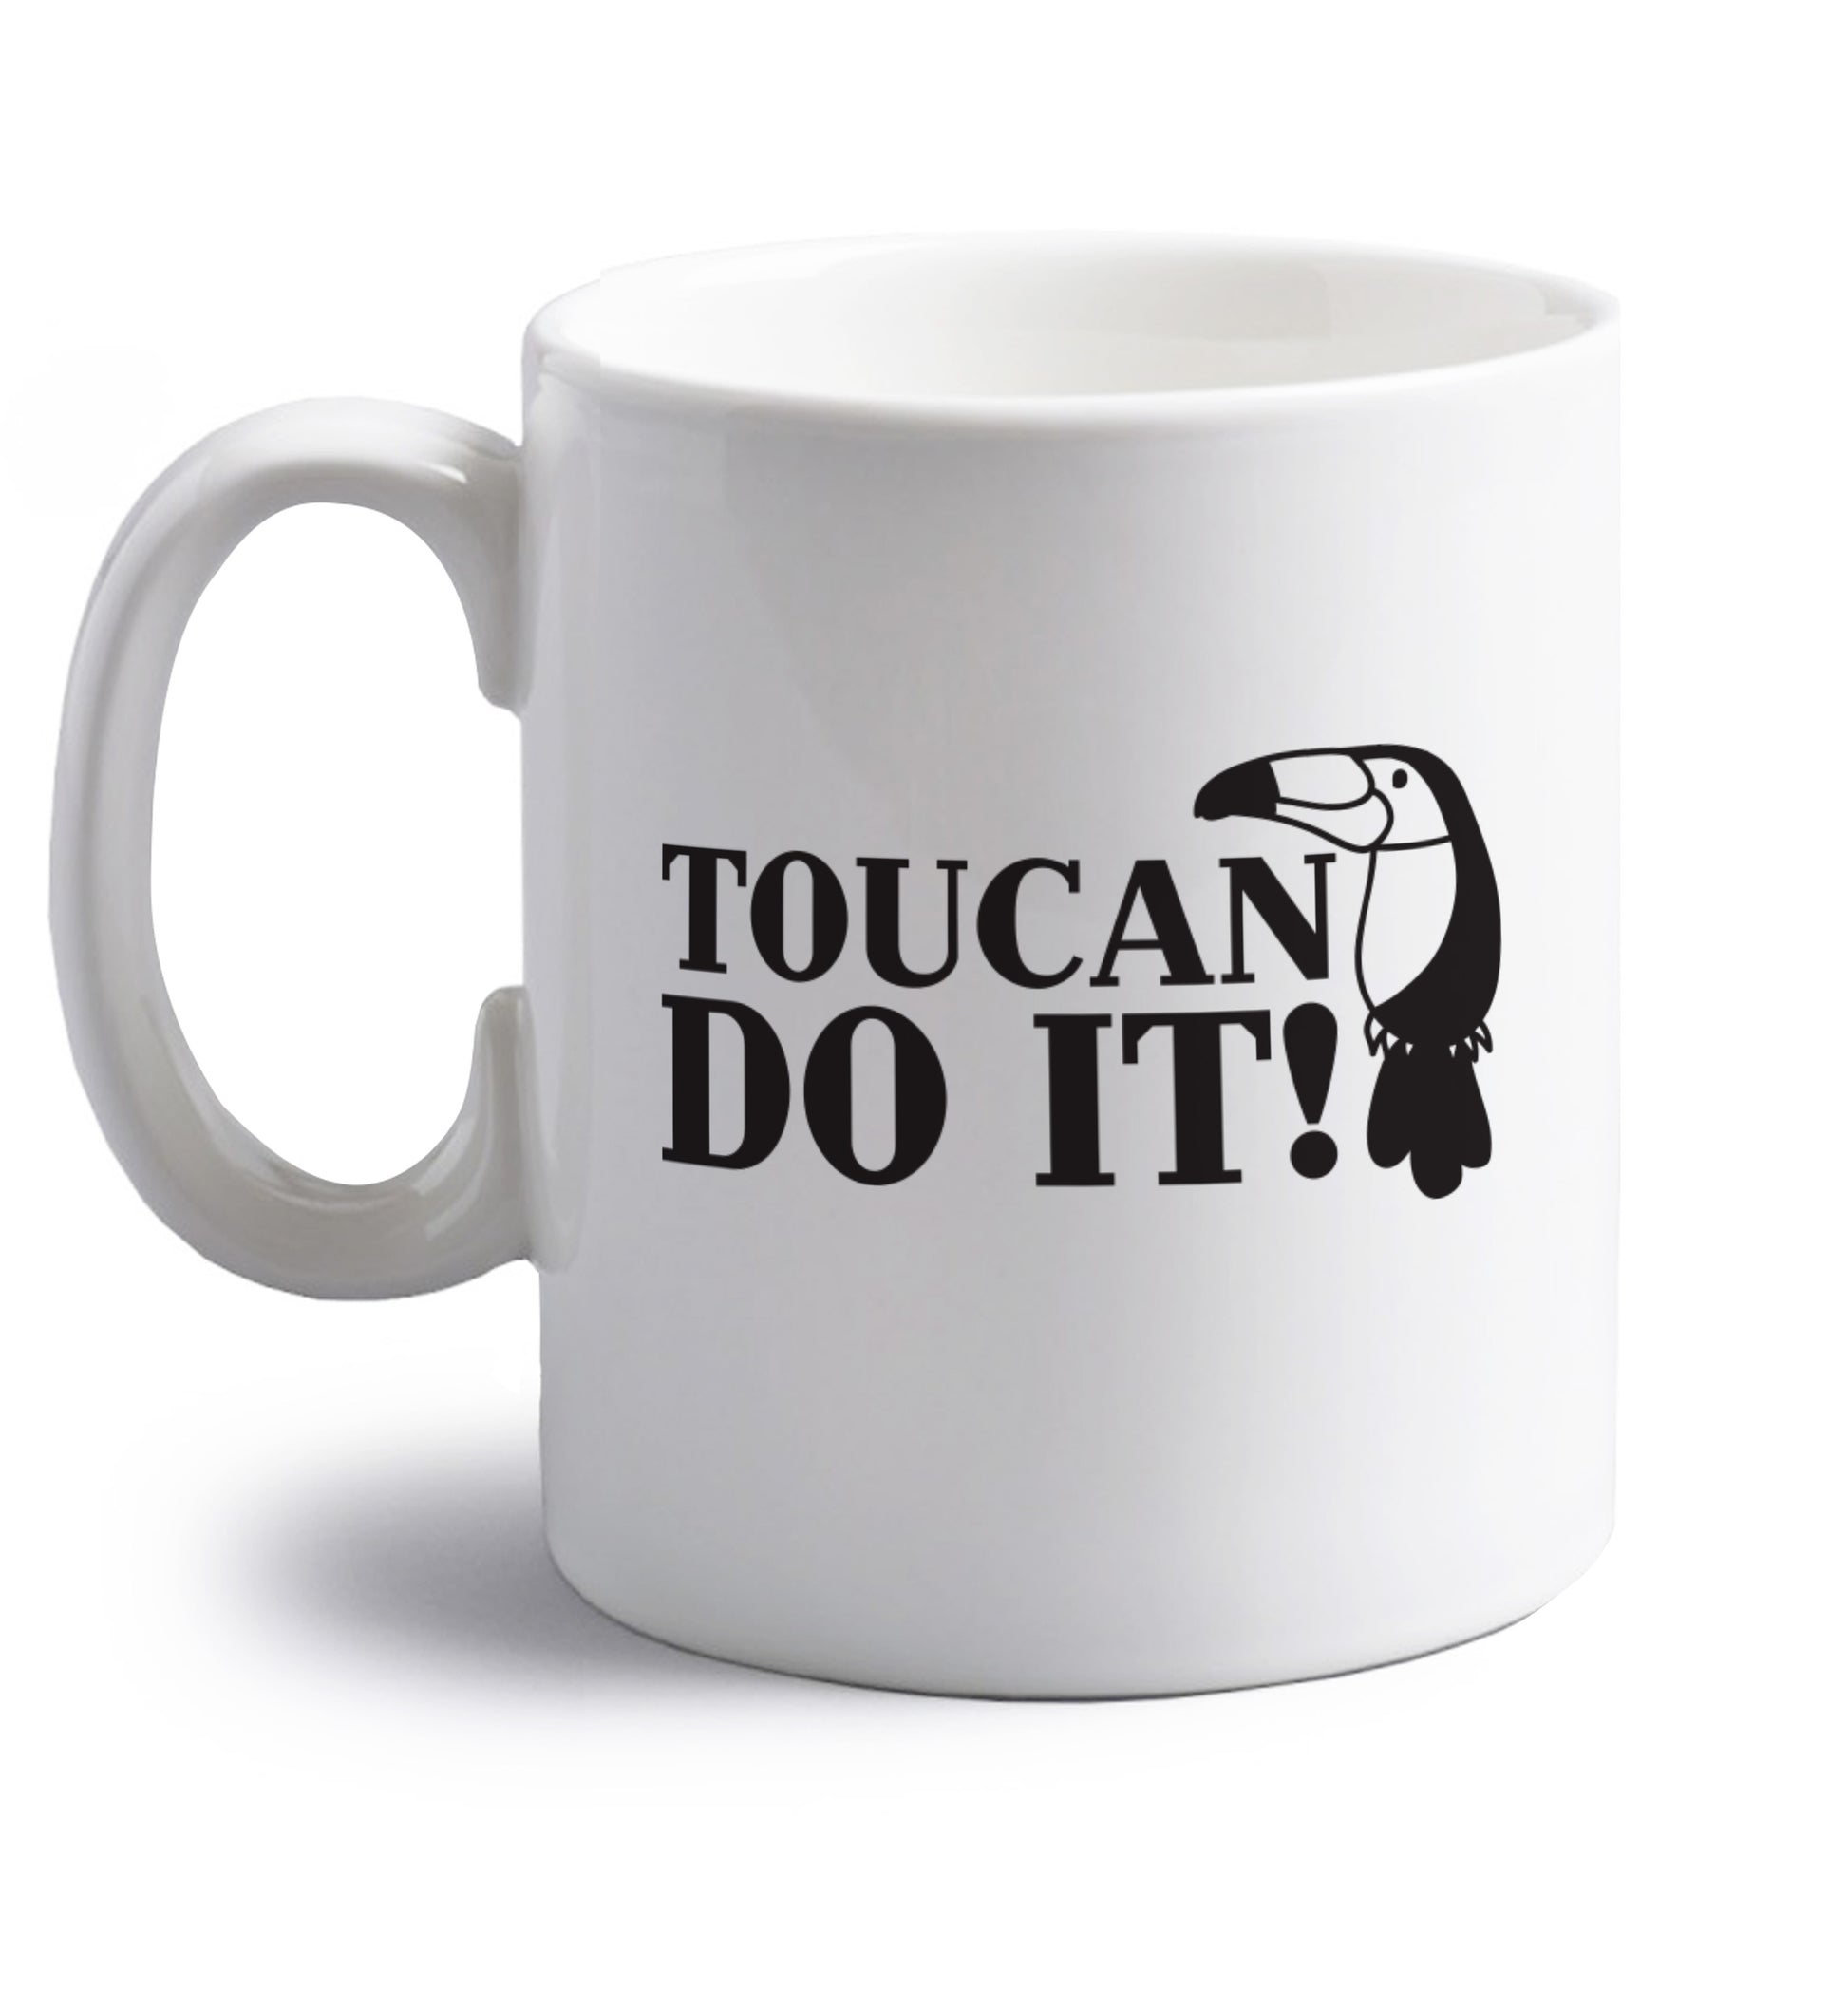 Toucan do it! right handed white ceramic mug 